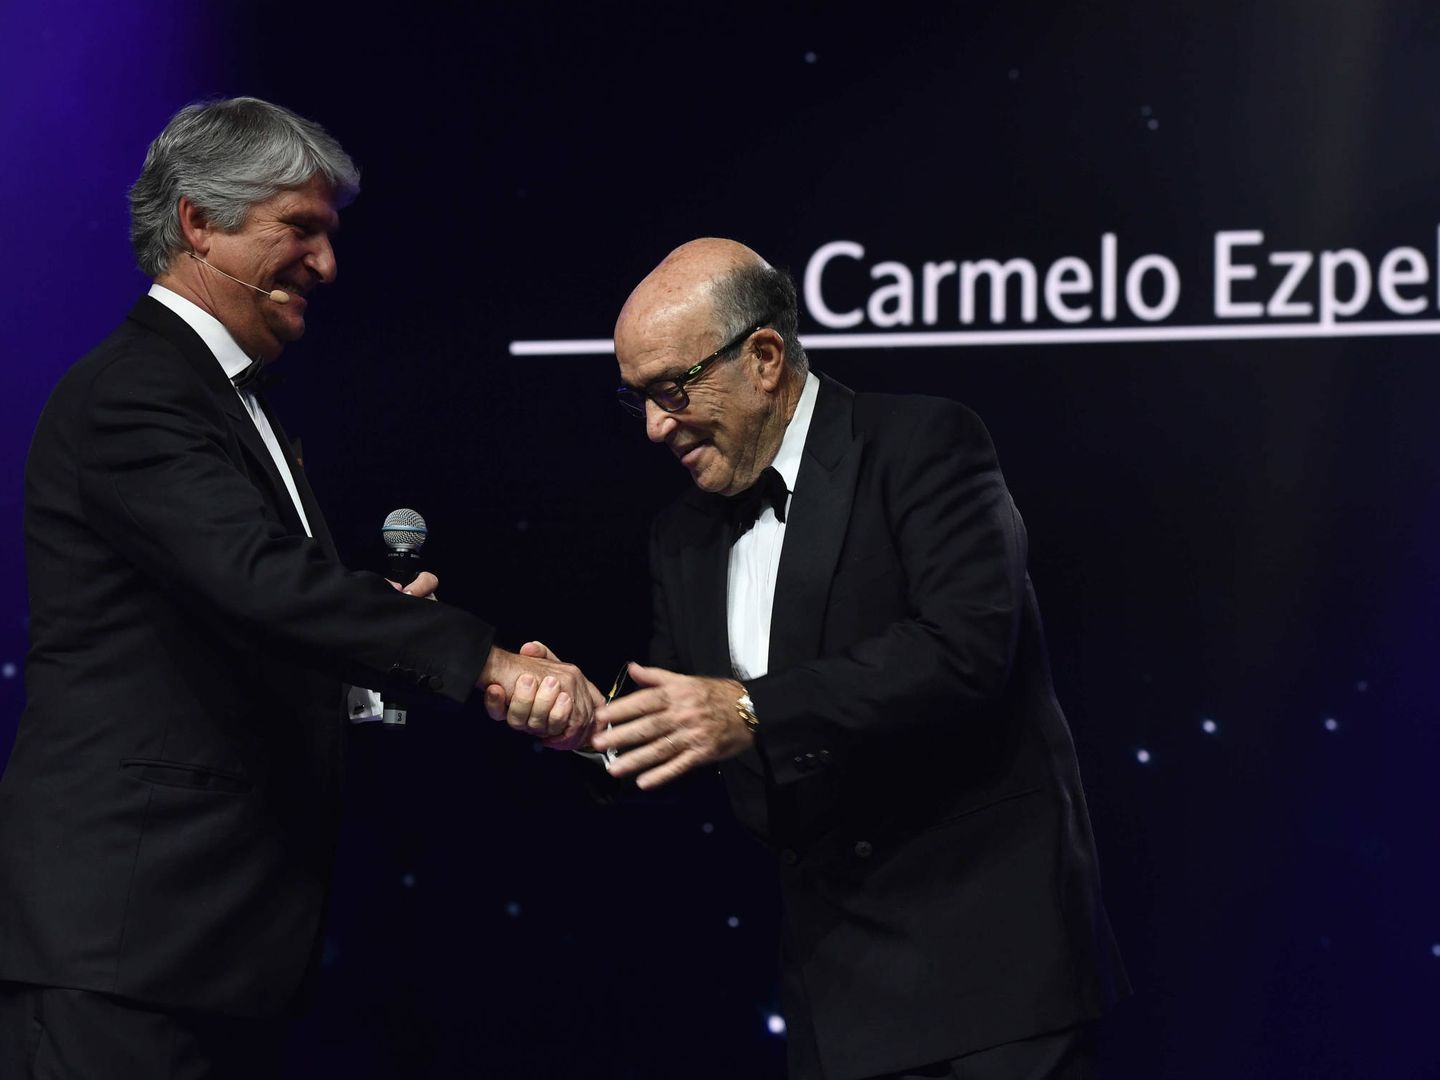 Carmelo Ezpeleta, CEO de Dorna, recibió el premio especial Leyenda del Promotor.